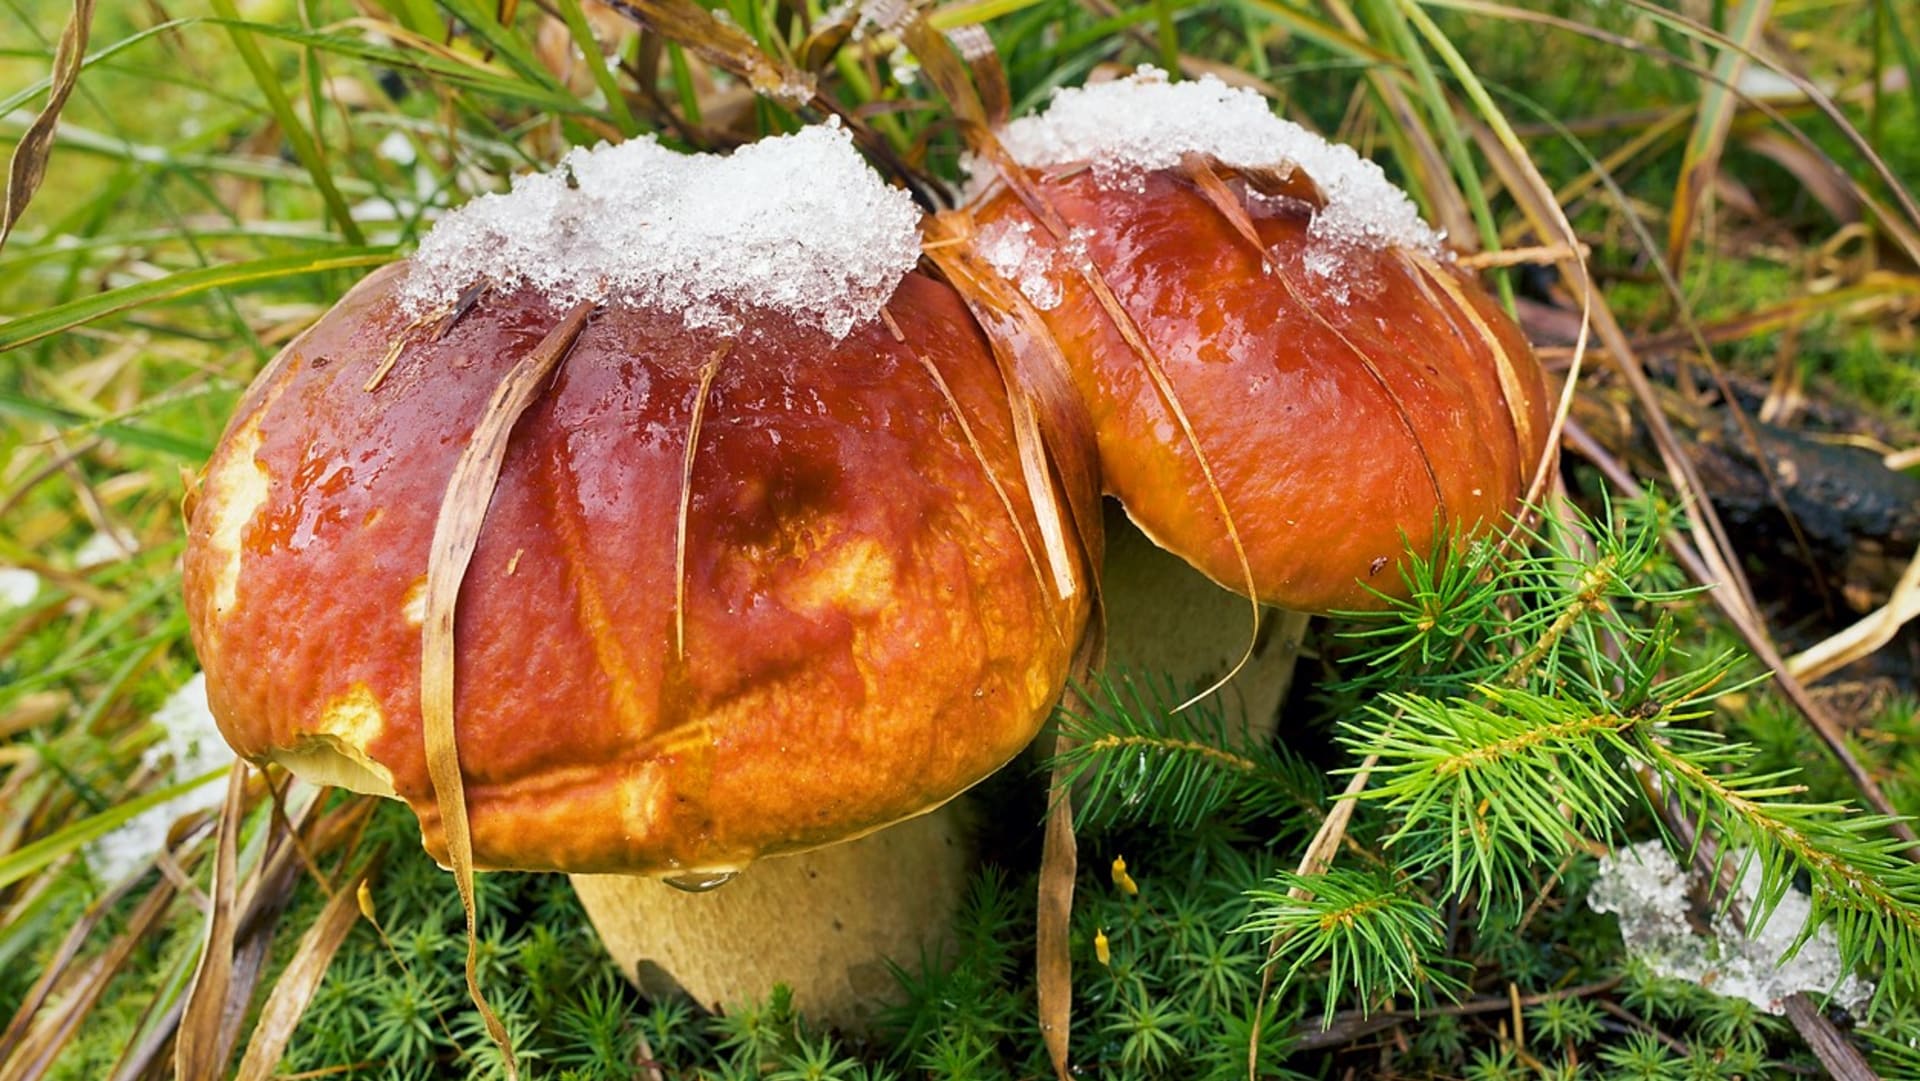 Sbírat, nebo nesbírat houby prošlé mrazem? 